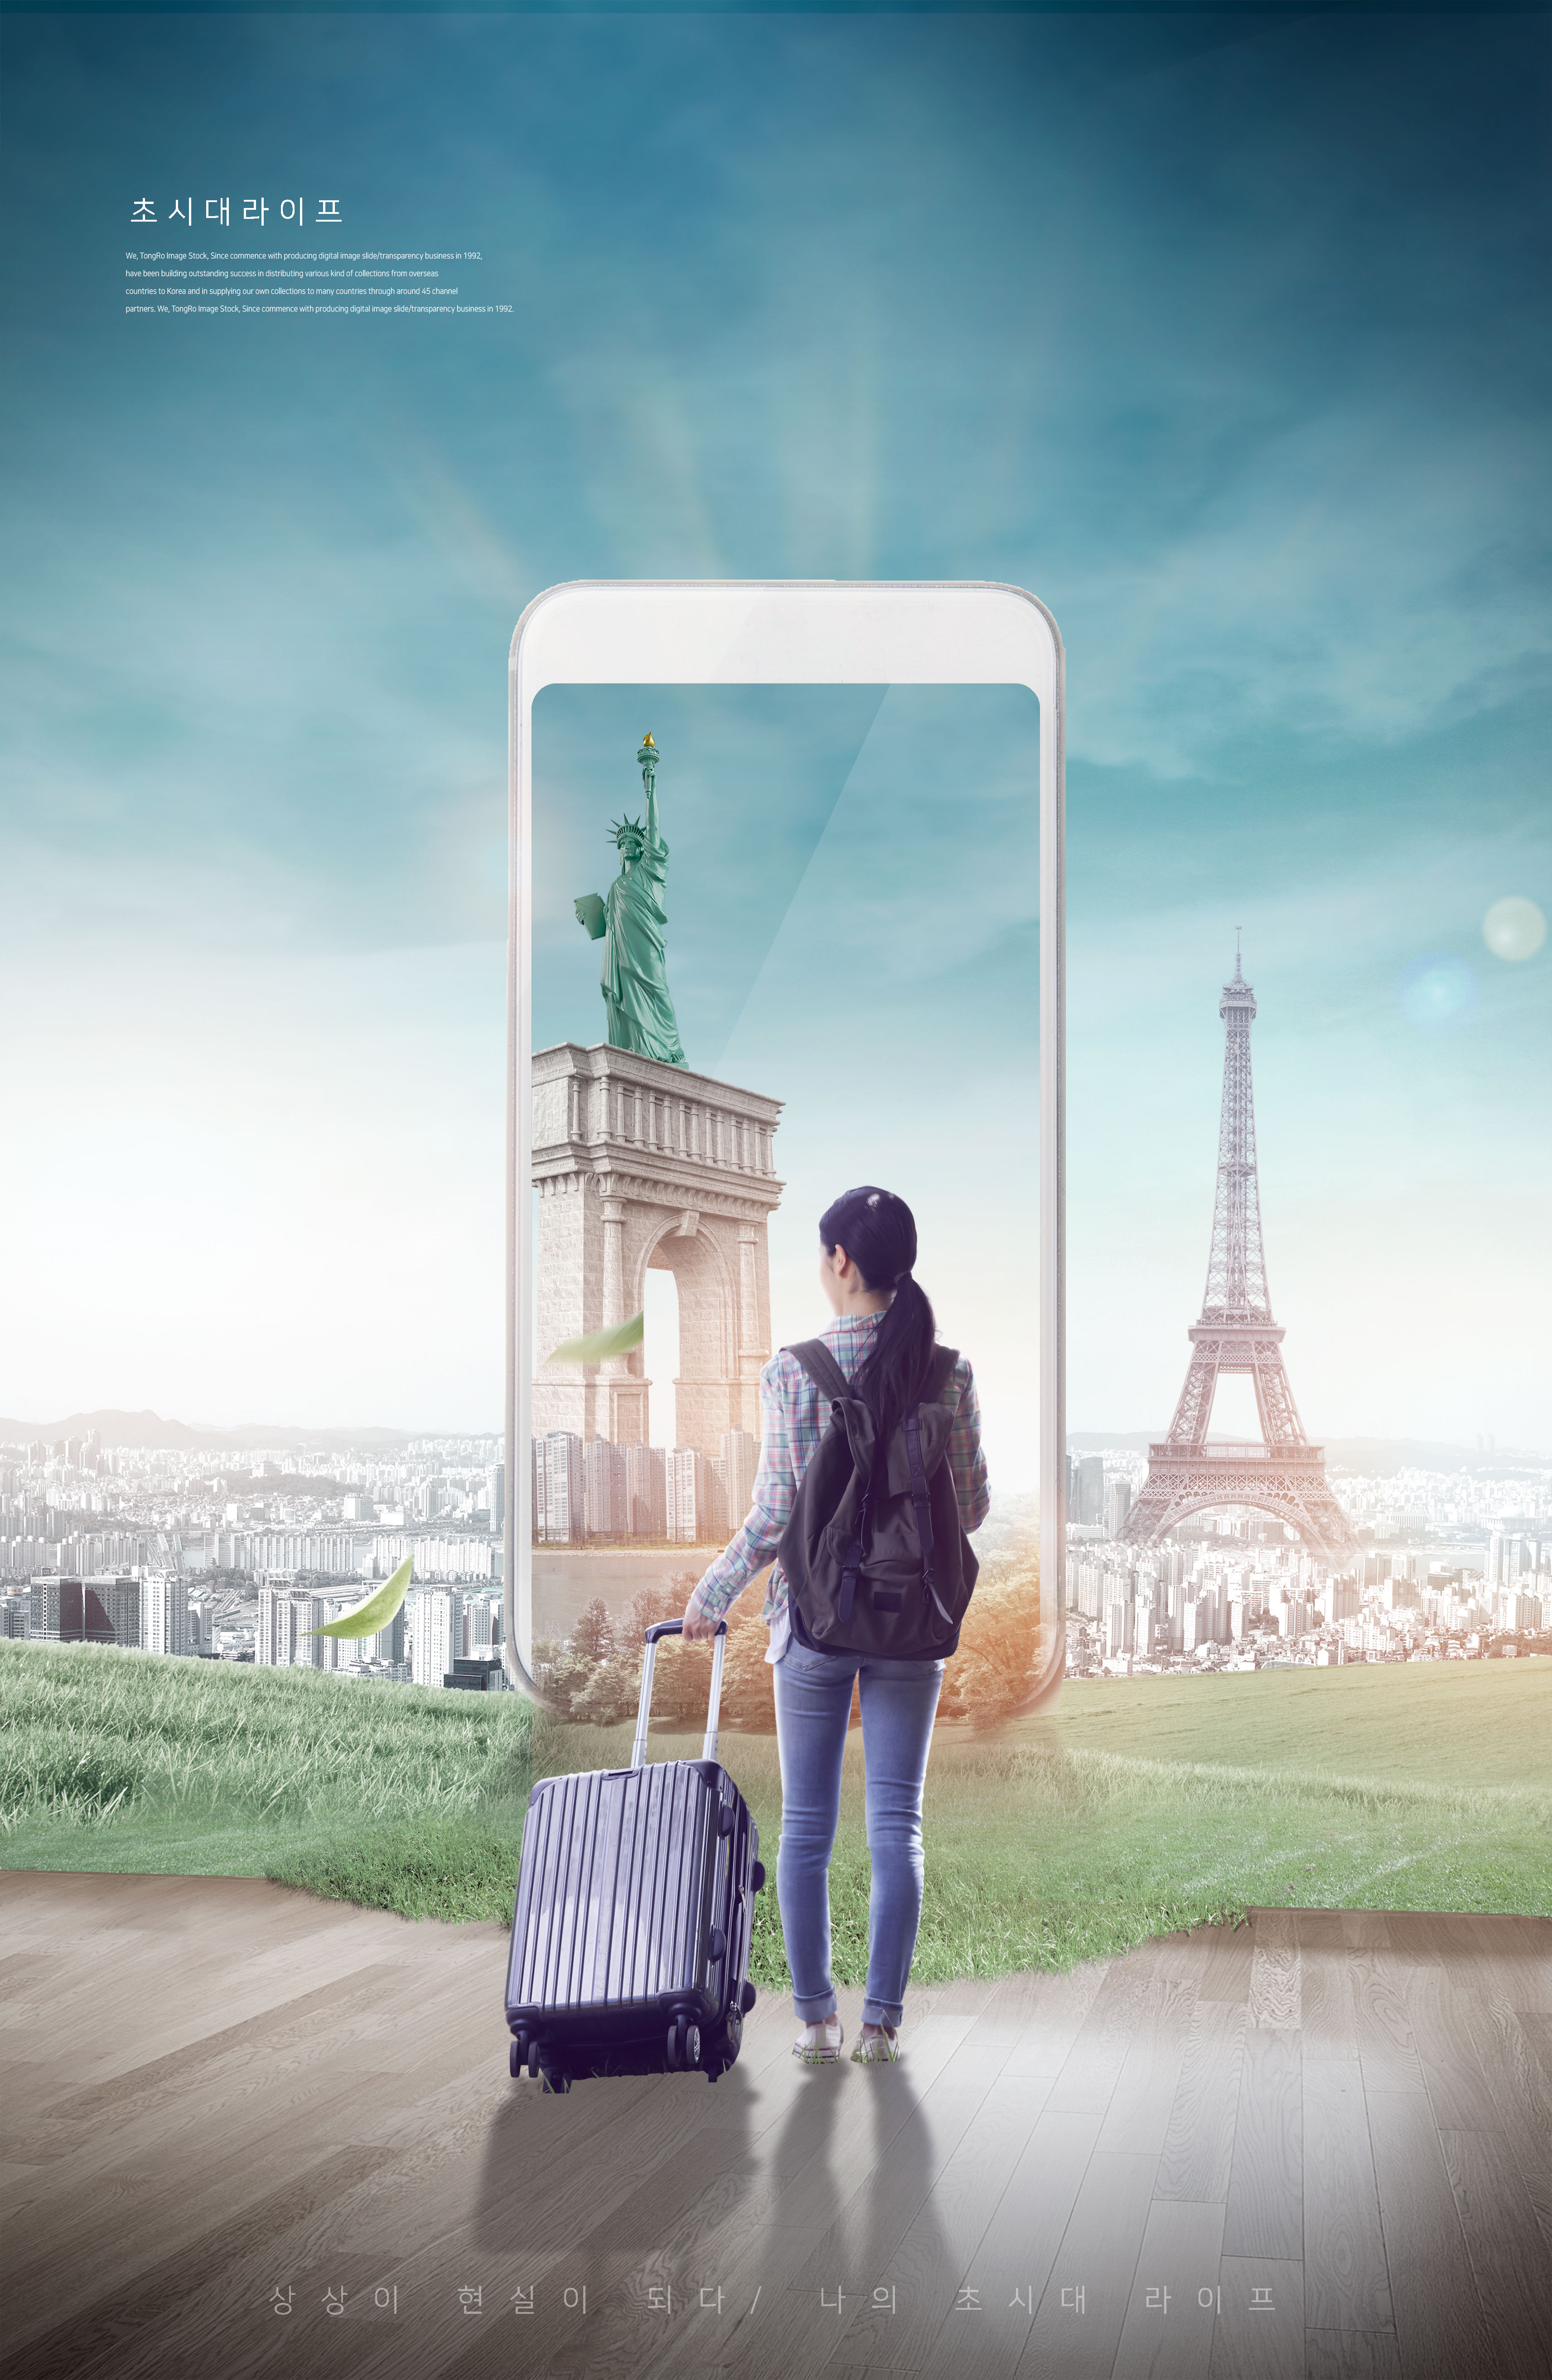 智能手机旅行生活概念海报设计套装插图